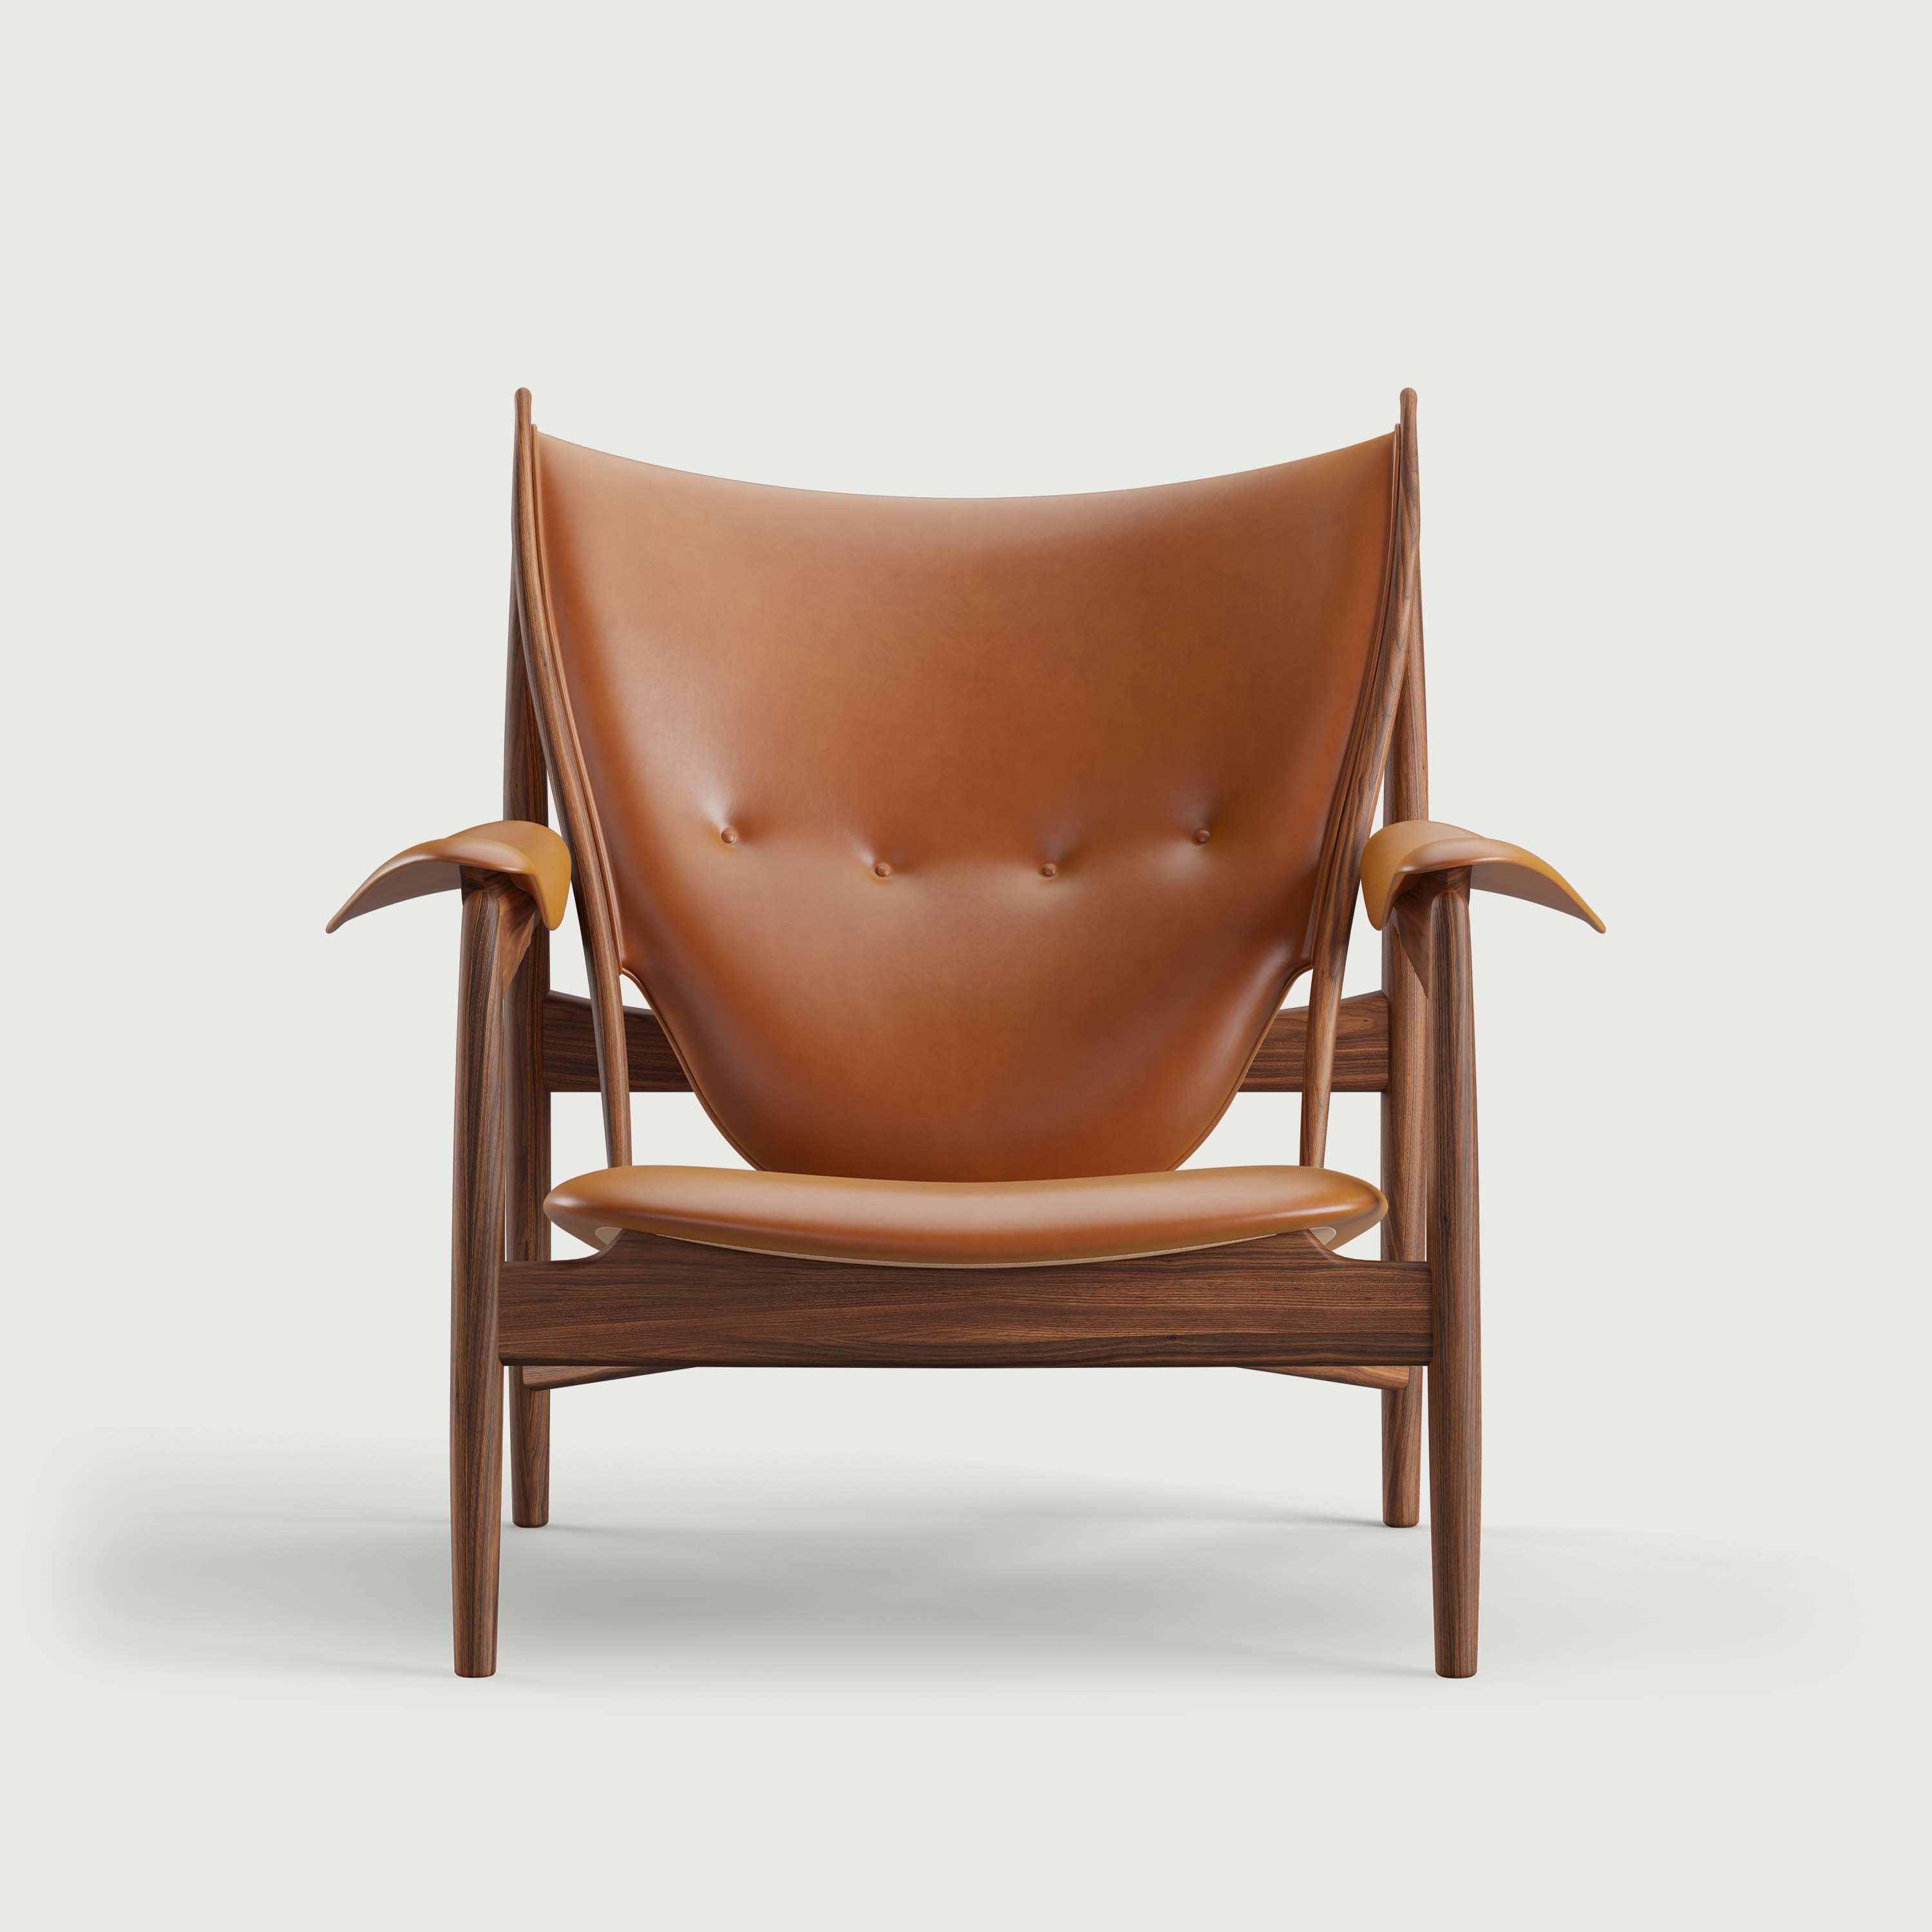 Chaise conçue par Finn Juhl en 1949, relancée en 2002.
Fabriqué par la Maison Finn Juhl au Danemark.

L'emblématique chaise Chieftain est l'un des chefs-d'œuvre absolus de Finn Juhl, représentant l'apogée de sa carrière de designer de meubles. Lors